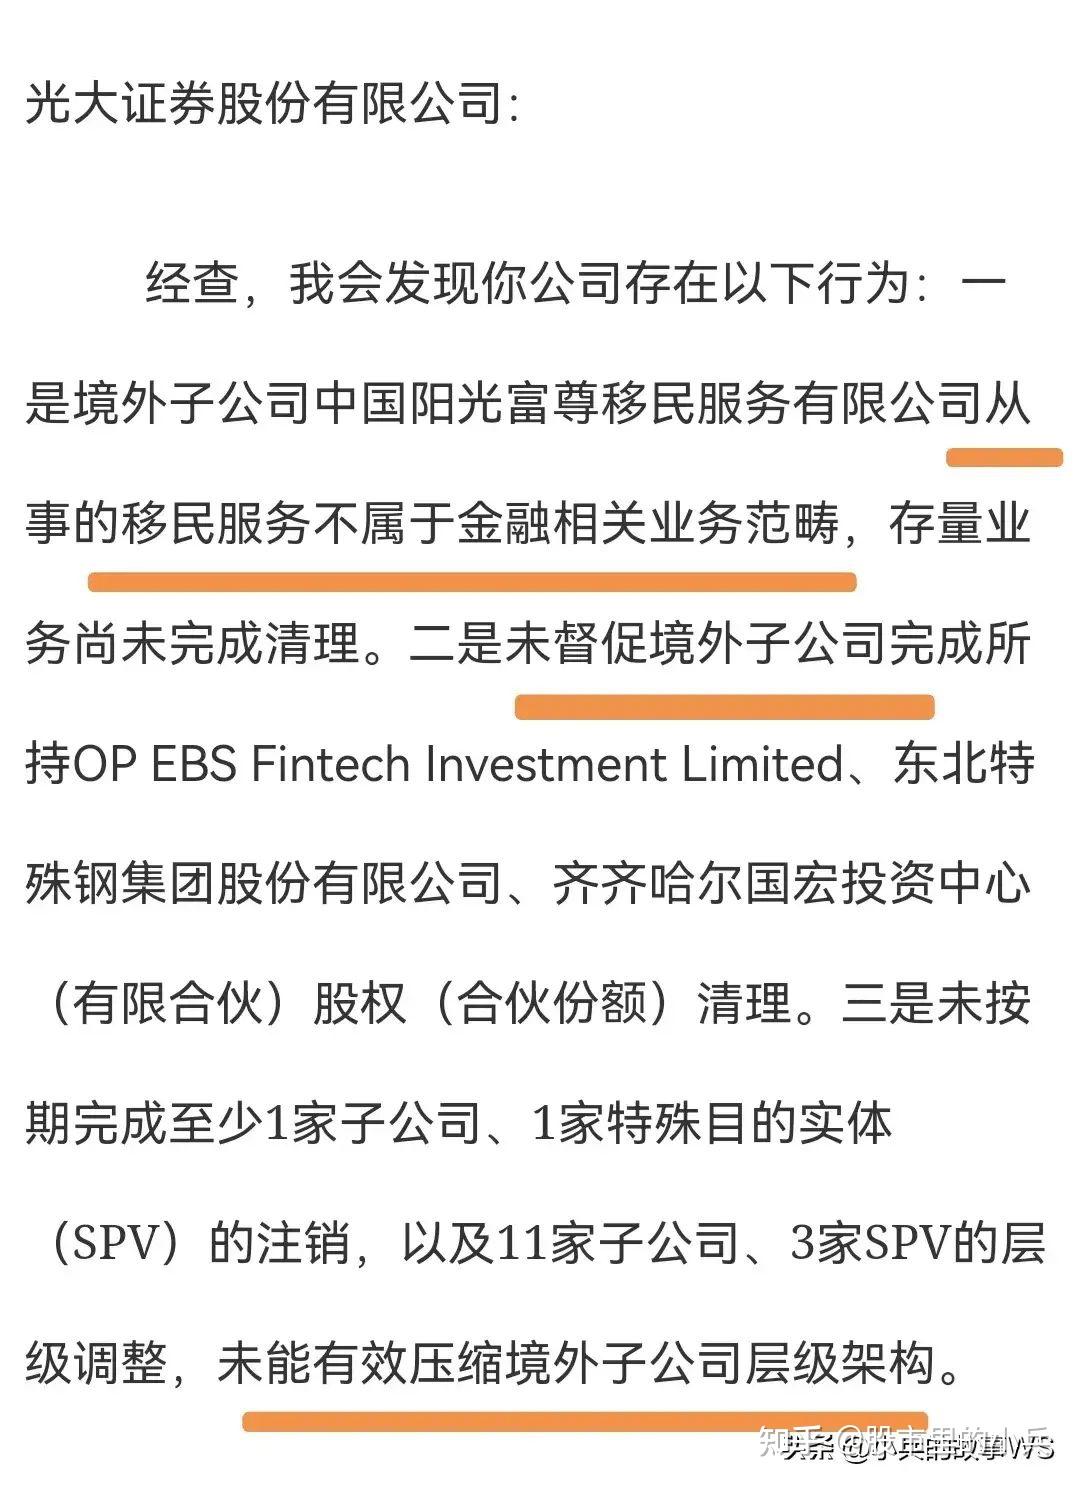 证监会通报2017年下半年IPO现场检查情况-新闻-上海证券报·中国证券网